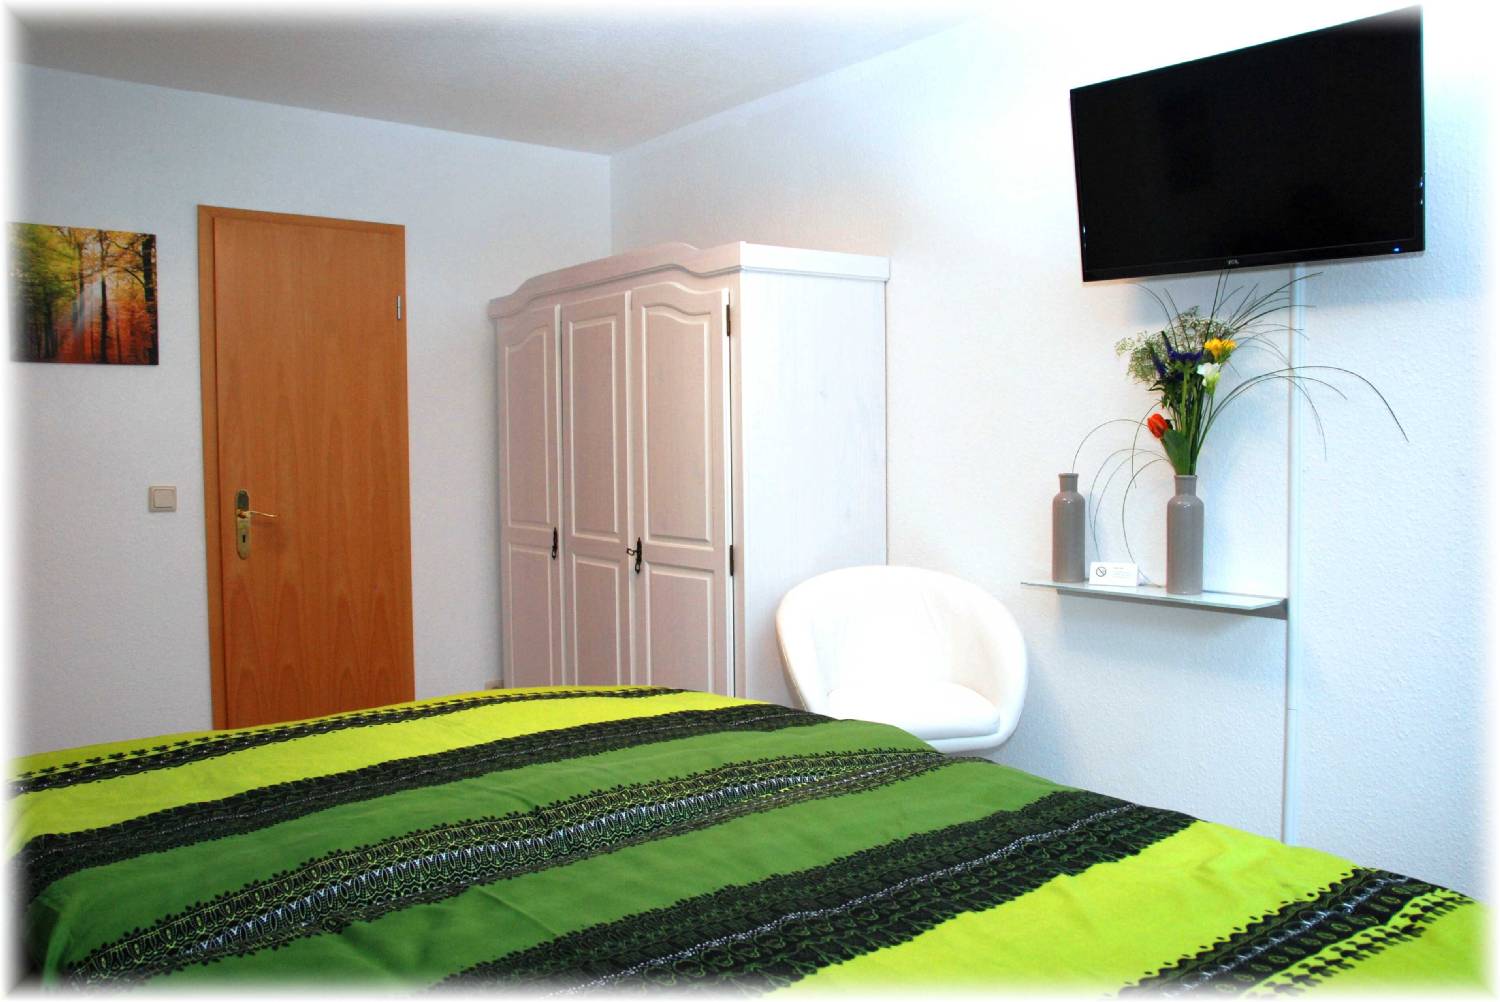 Zimmervermietung für Einzel-, Doppel und Budget- Doppelzimmer finden Sie bei uns im Gästehaus Bacchus in Wachenheim an der Weinstraße